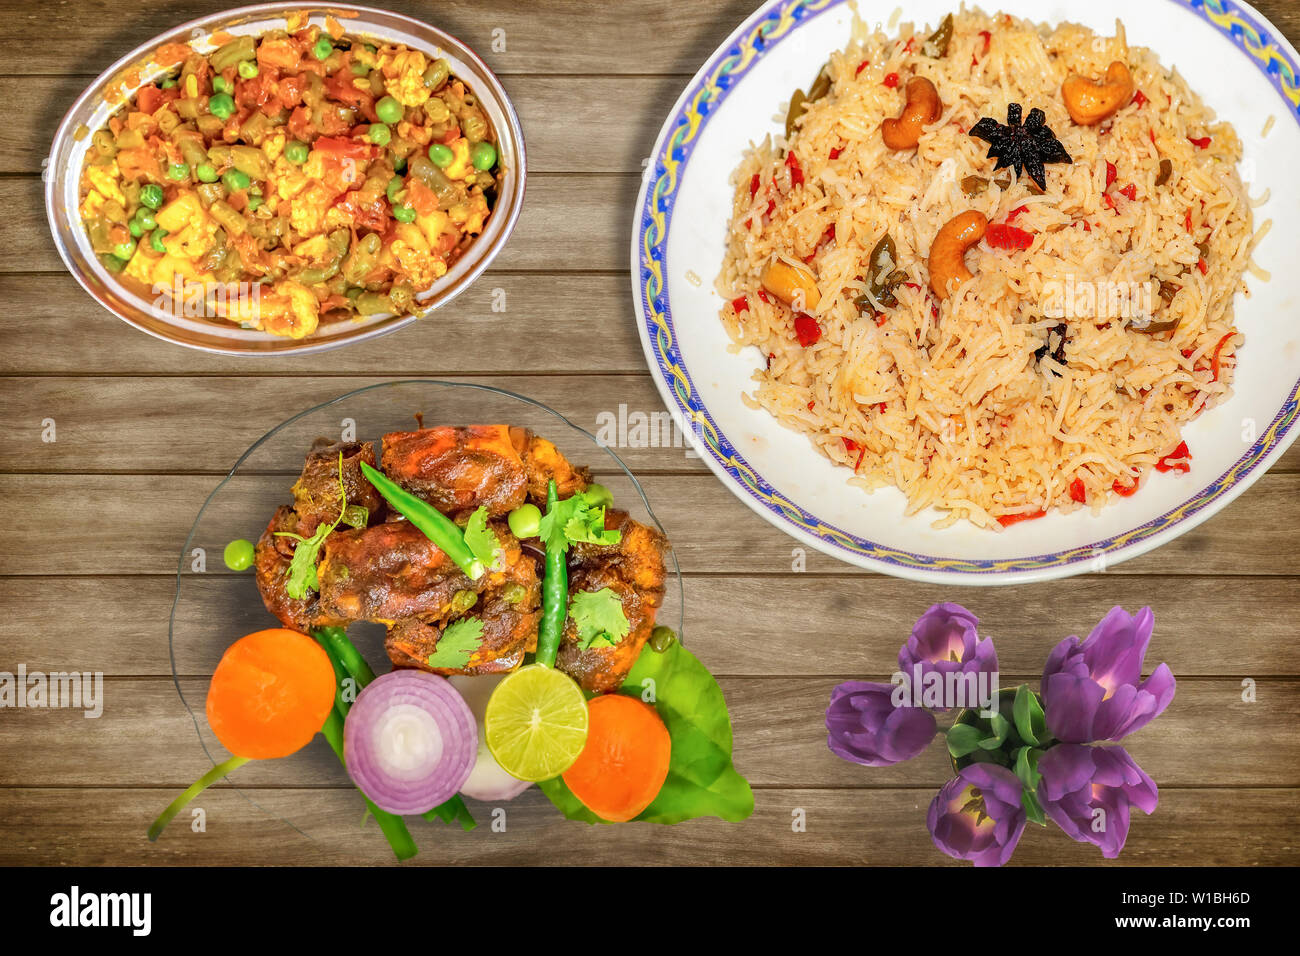 De délicieux repas de cuisine indienne de riz frit avec légumes mixtes avec red hot spicy lobster dish garnie de salade et poulet épicé chili Banque D'Images